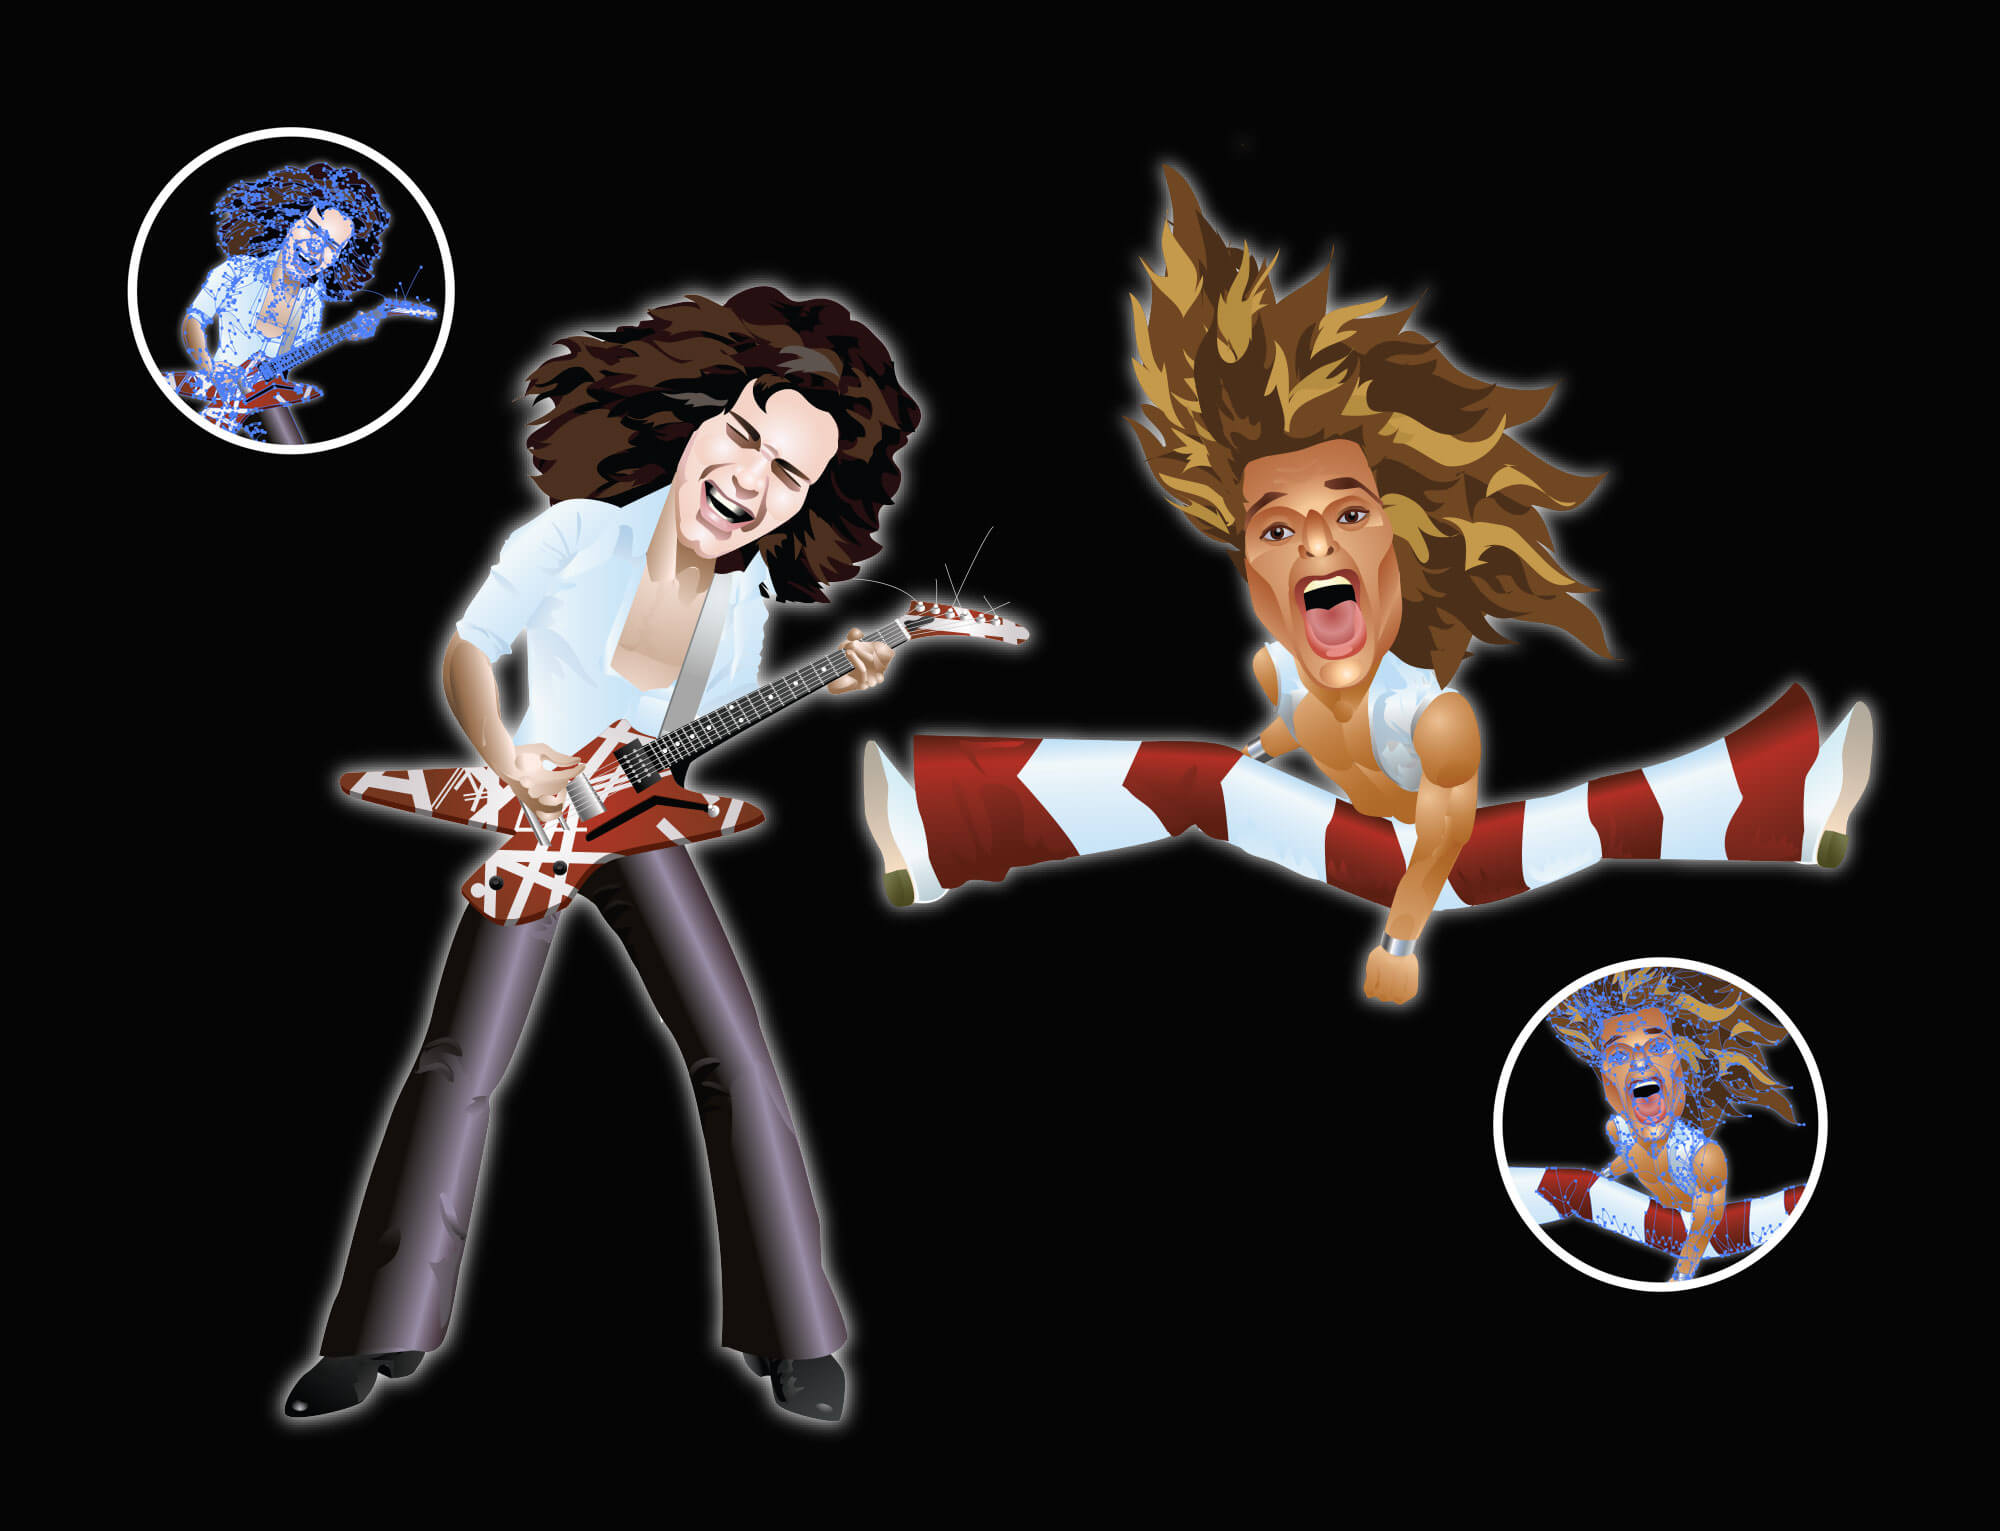 Caricatures of Eddie Van Halen and David Lee Roth